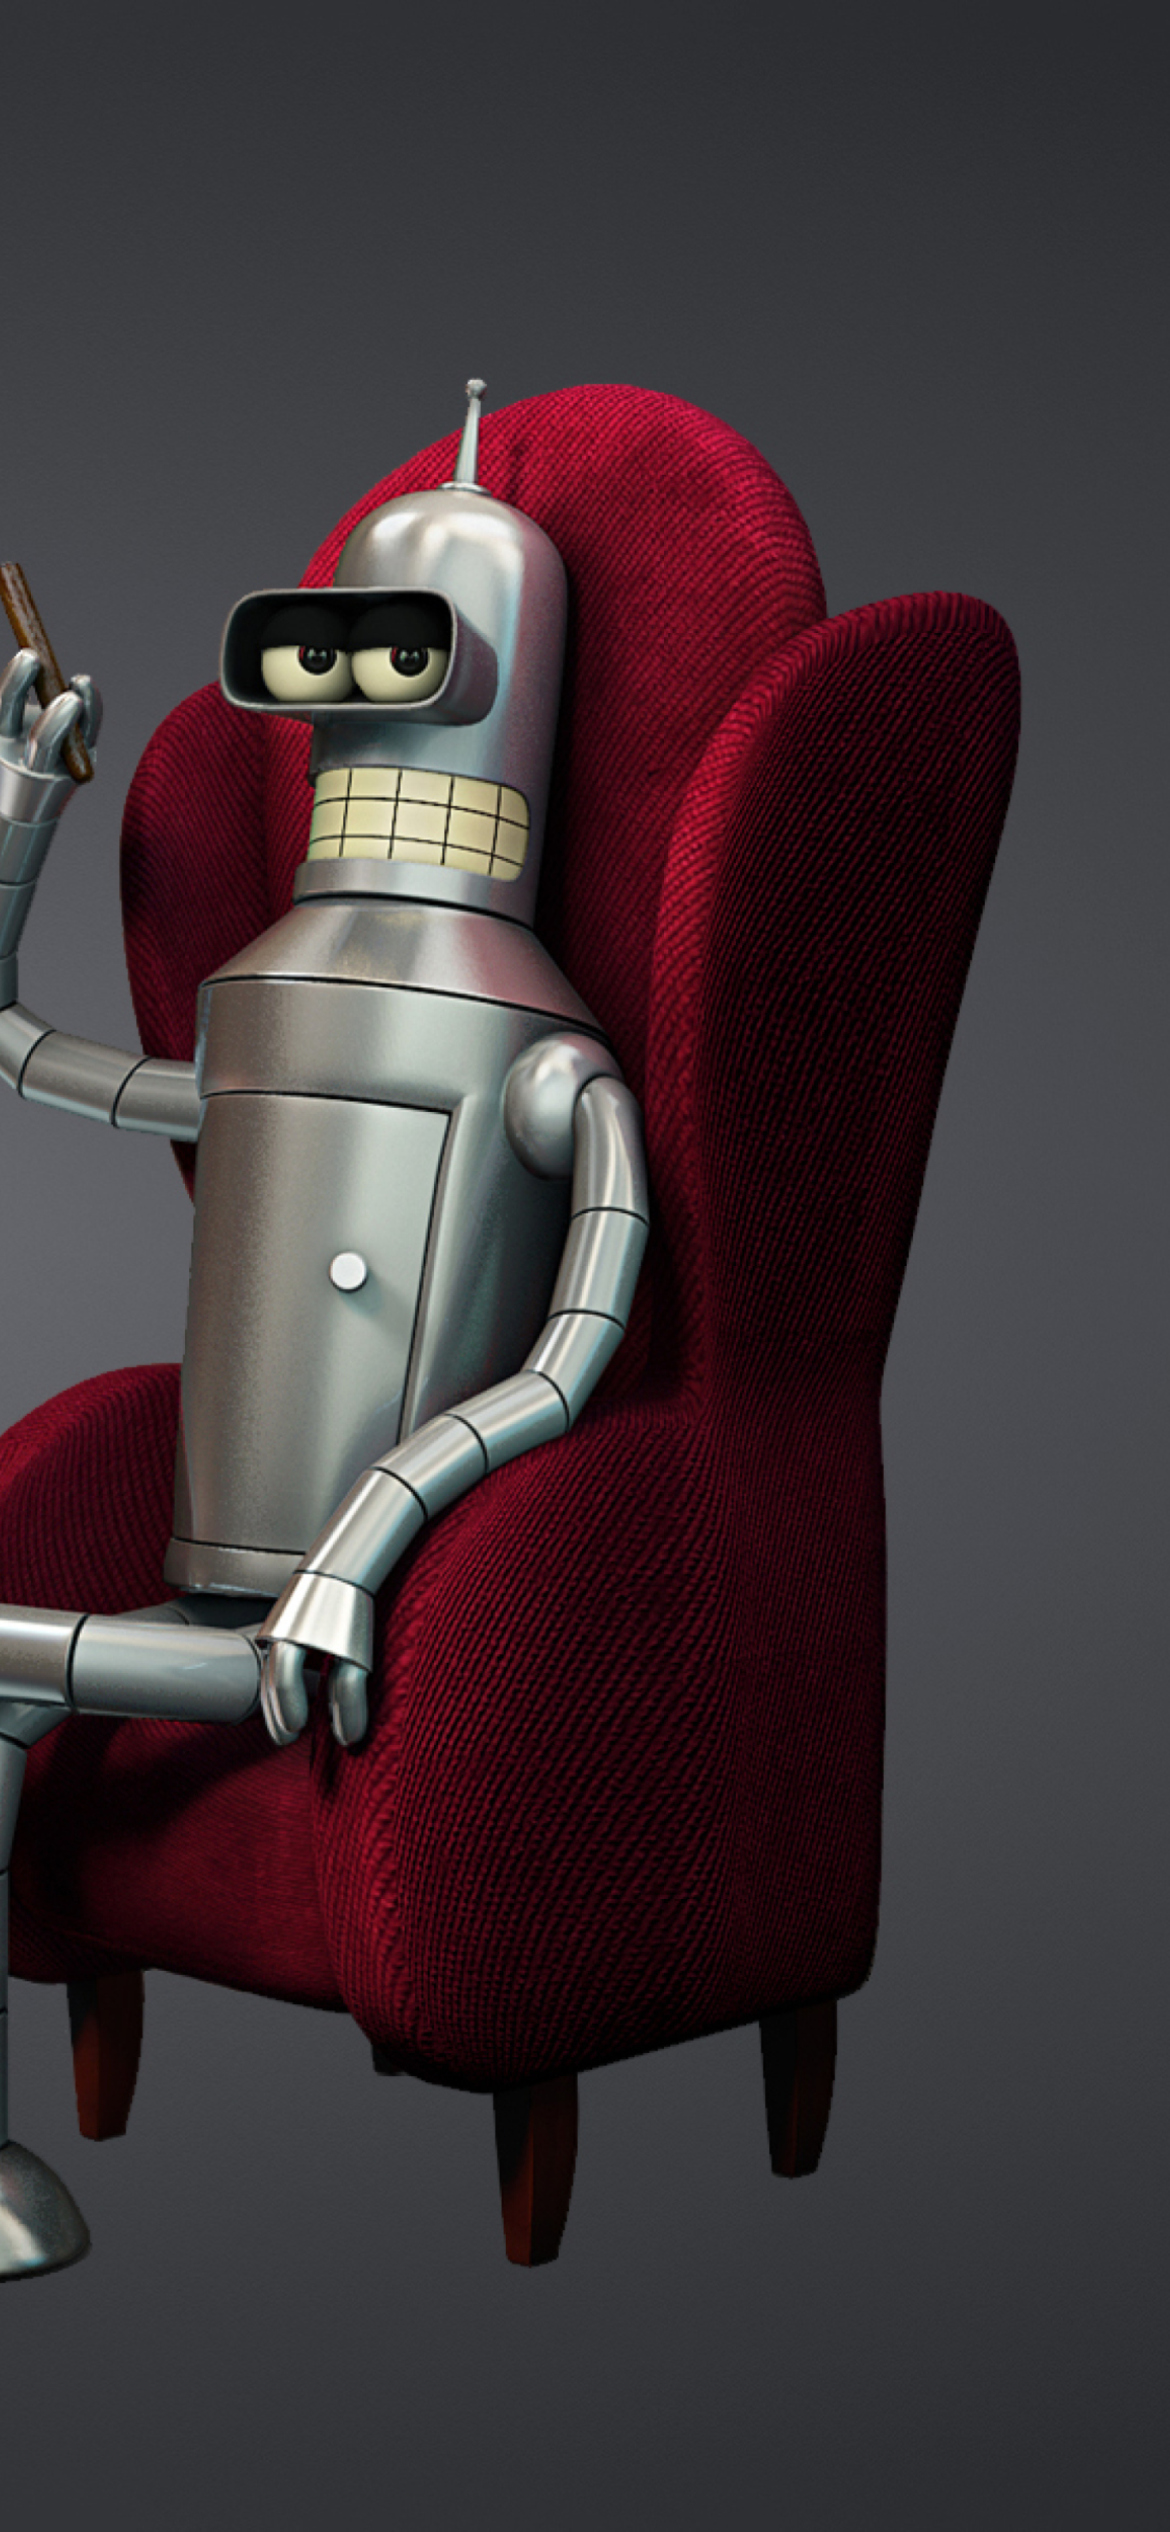 3D Bender Futurama - Fondos de pantalla gratis para iPhone 11